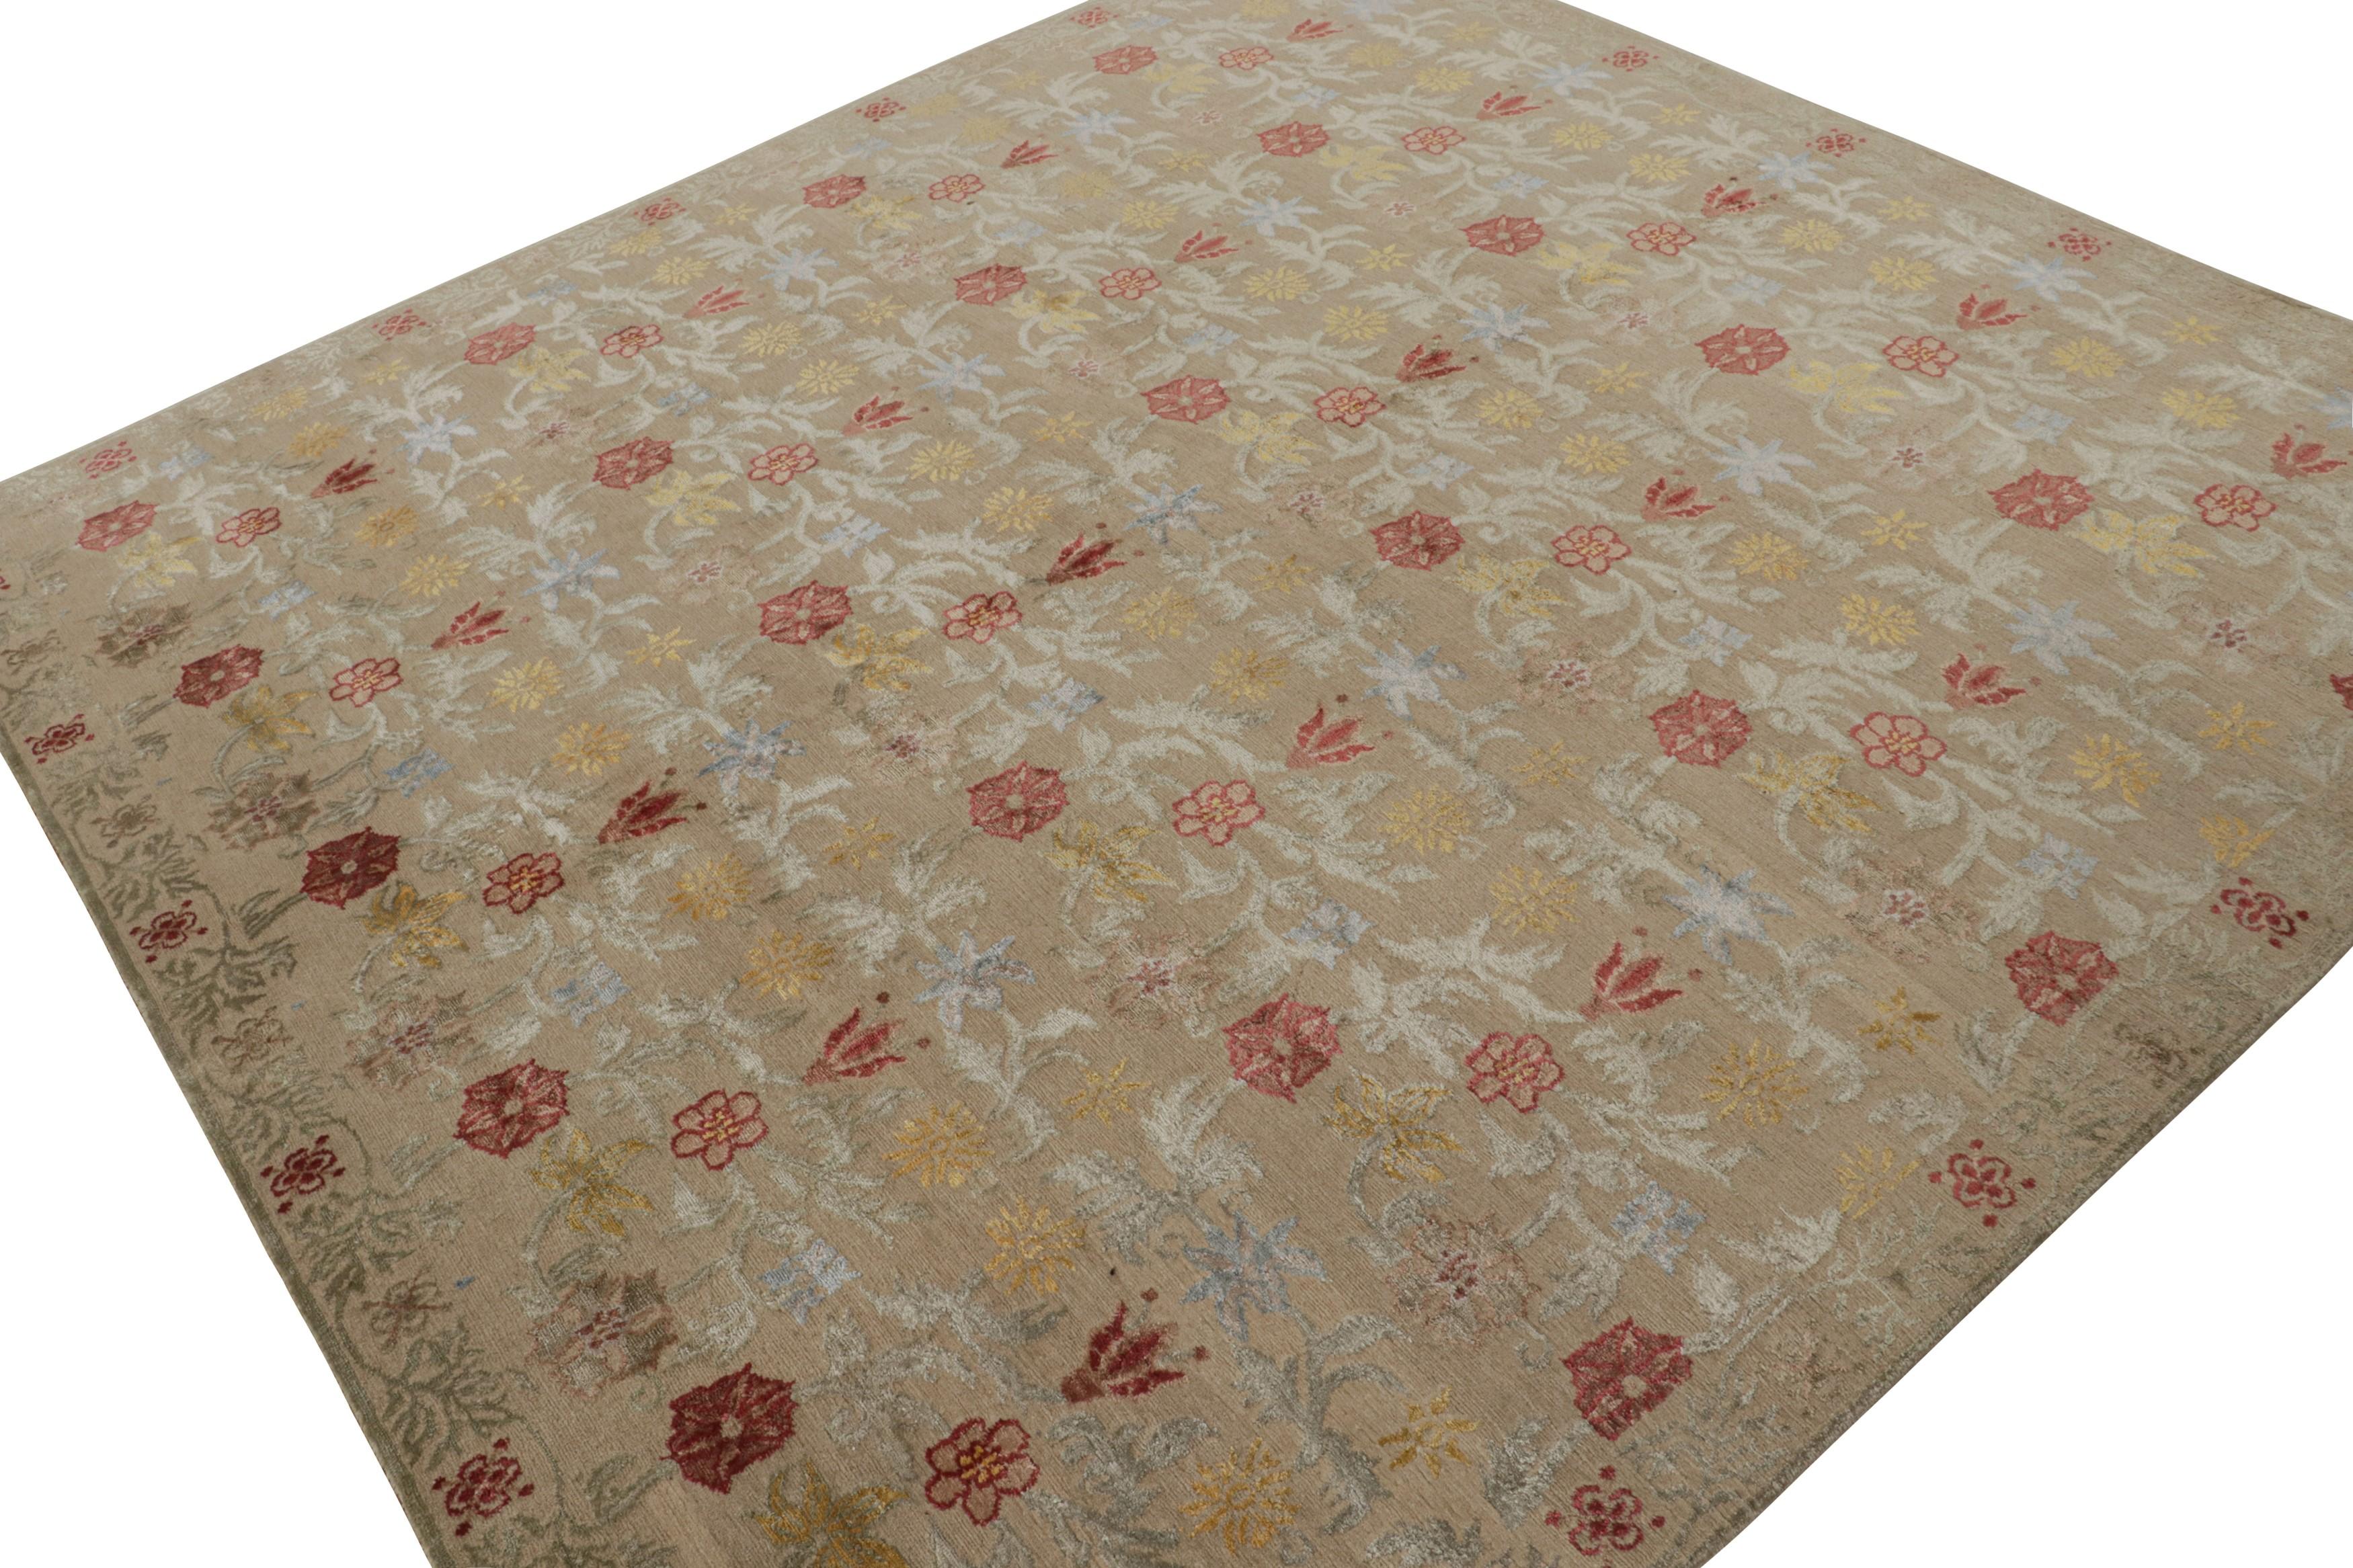 Noué à la main en soie et laine naturelles, ce tapis de transition 8x8 vient s'ajouter à la collection de tapis européens de Rug & Kilim, affectueusement surnommée 